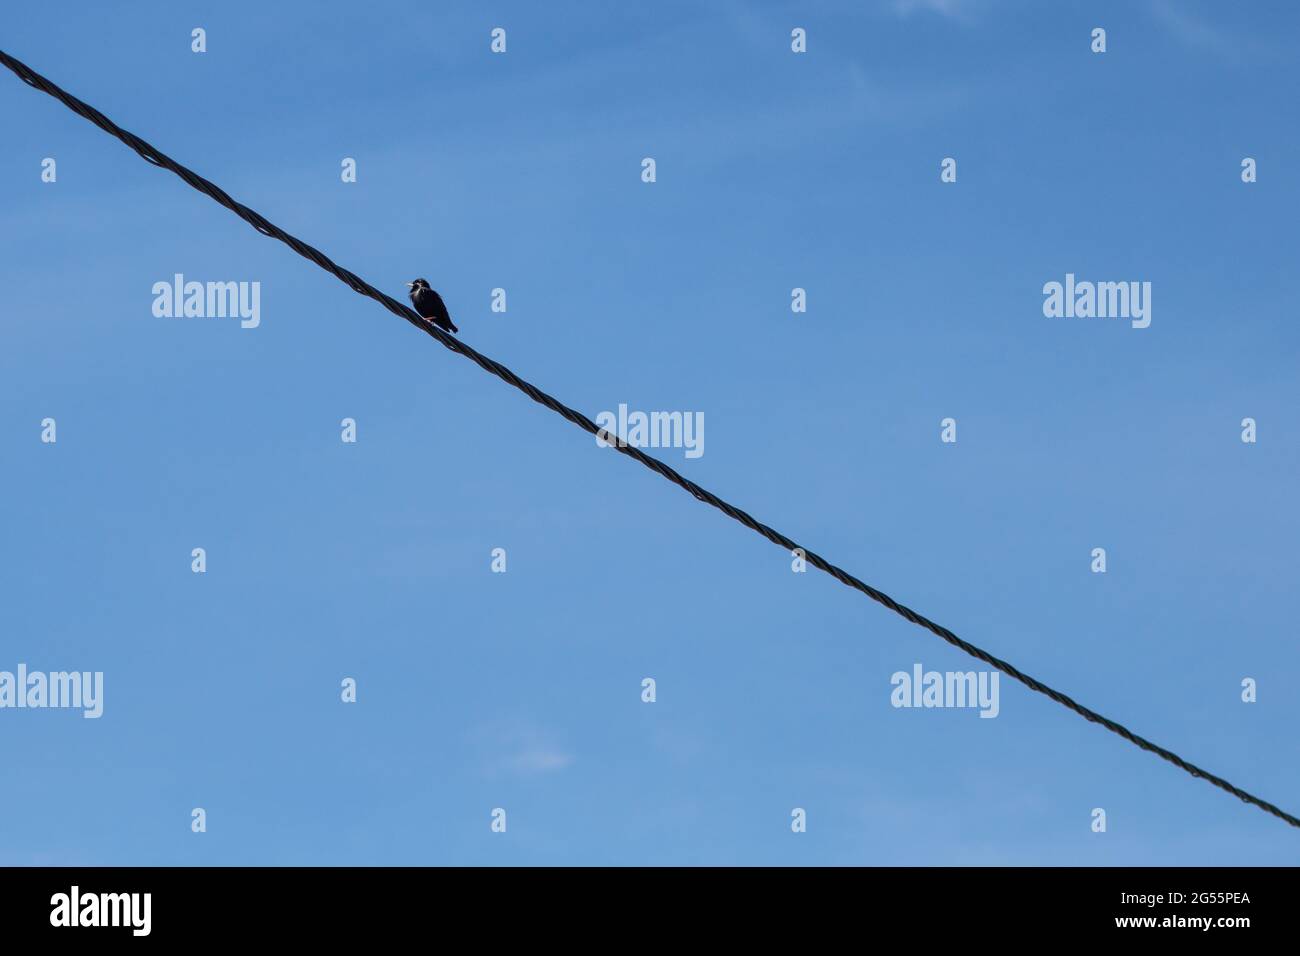 Un distante e impecable estrellamiento en el cable eléctrico aislado sobre un fondo azul claro del cielo. Foto minimalista de pájaro en alambre con espacio negativo Foto de stock